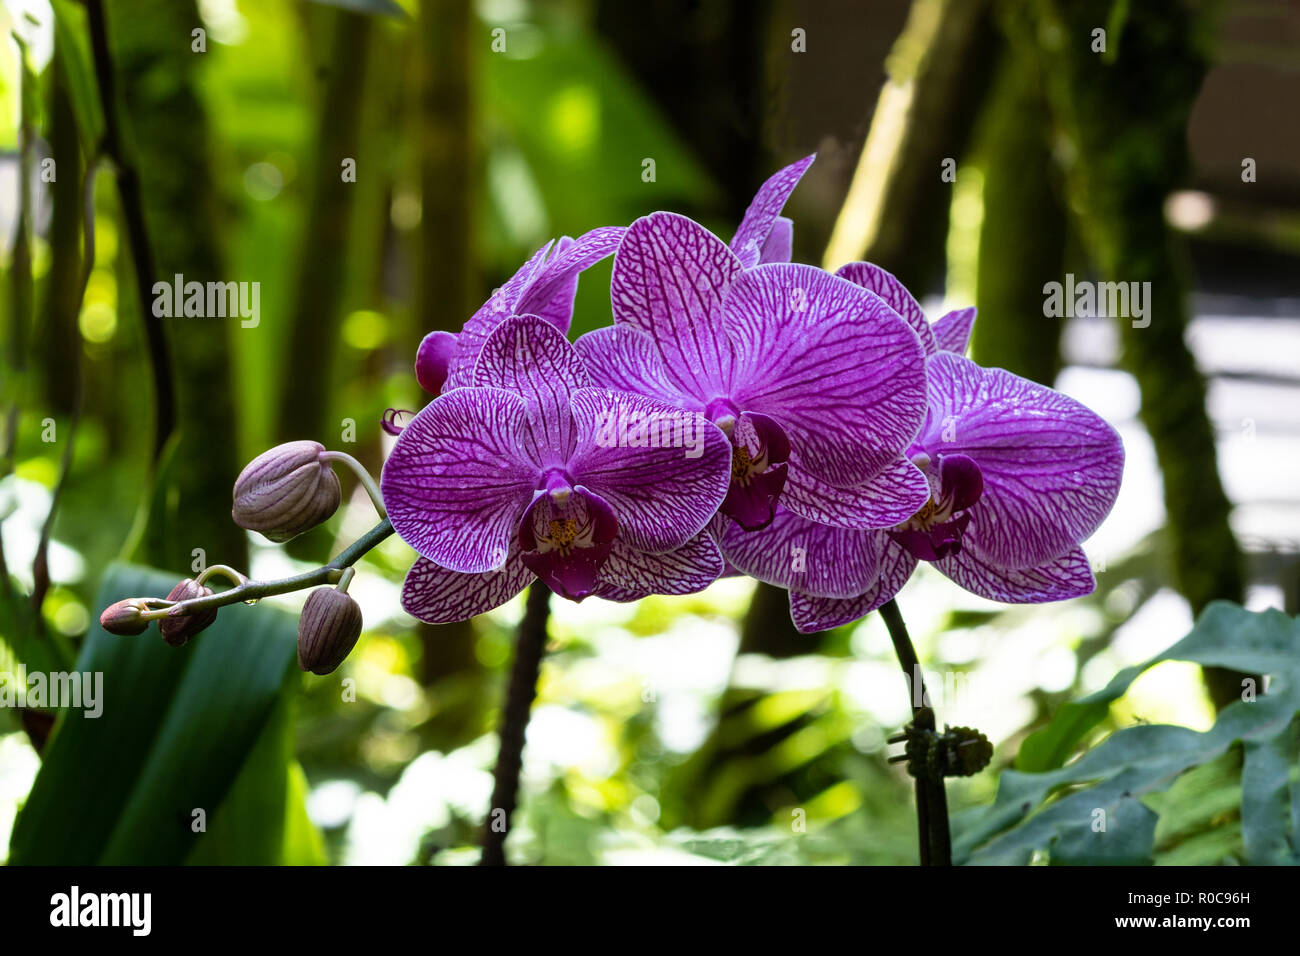 Montón de Phalaenopsis (polilla) en forma de orquídeas en el jardín  botánico, mantenido por el ARS en Hilo, Hawai. Los pétalos de color púrpura  oscuro a rayas; helechos y hojas verdes en